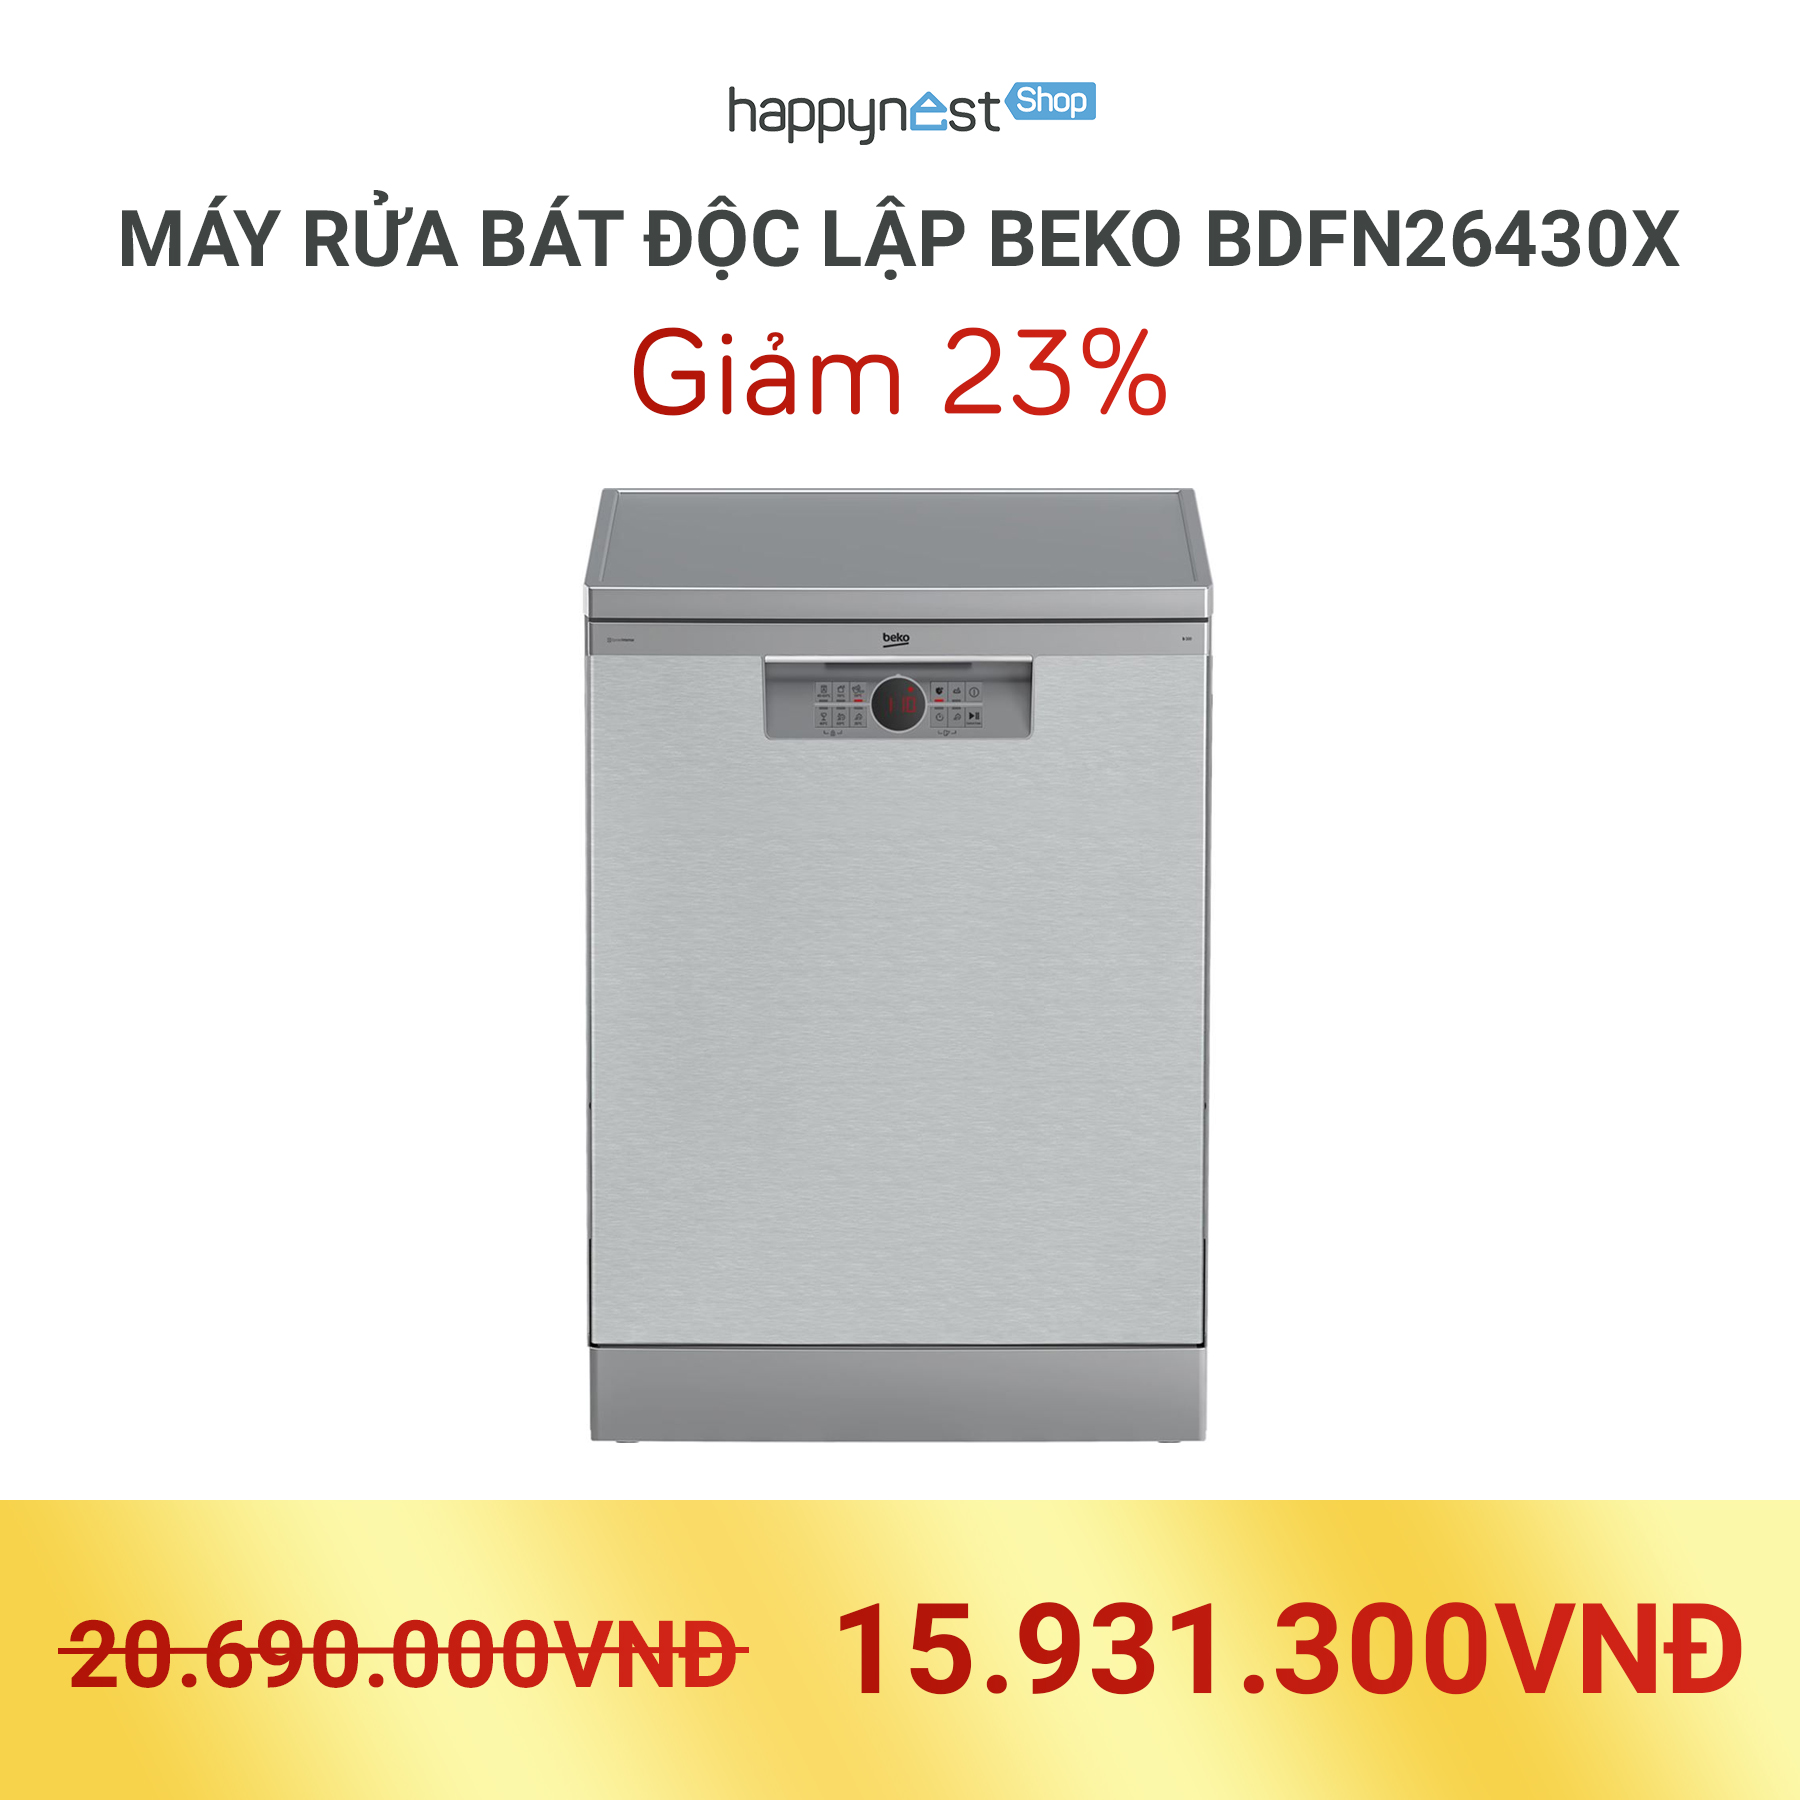 Máy rửa bát độc lập Beko BDFN26430X hoạt động với công suất 1800 - 2100W cùng chế độ tiết kiệm năng lượng tối ưu